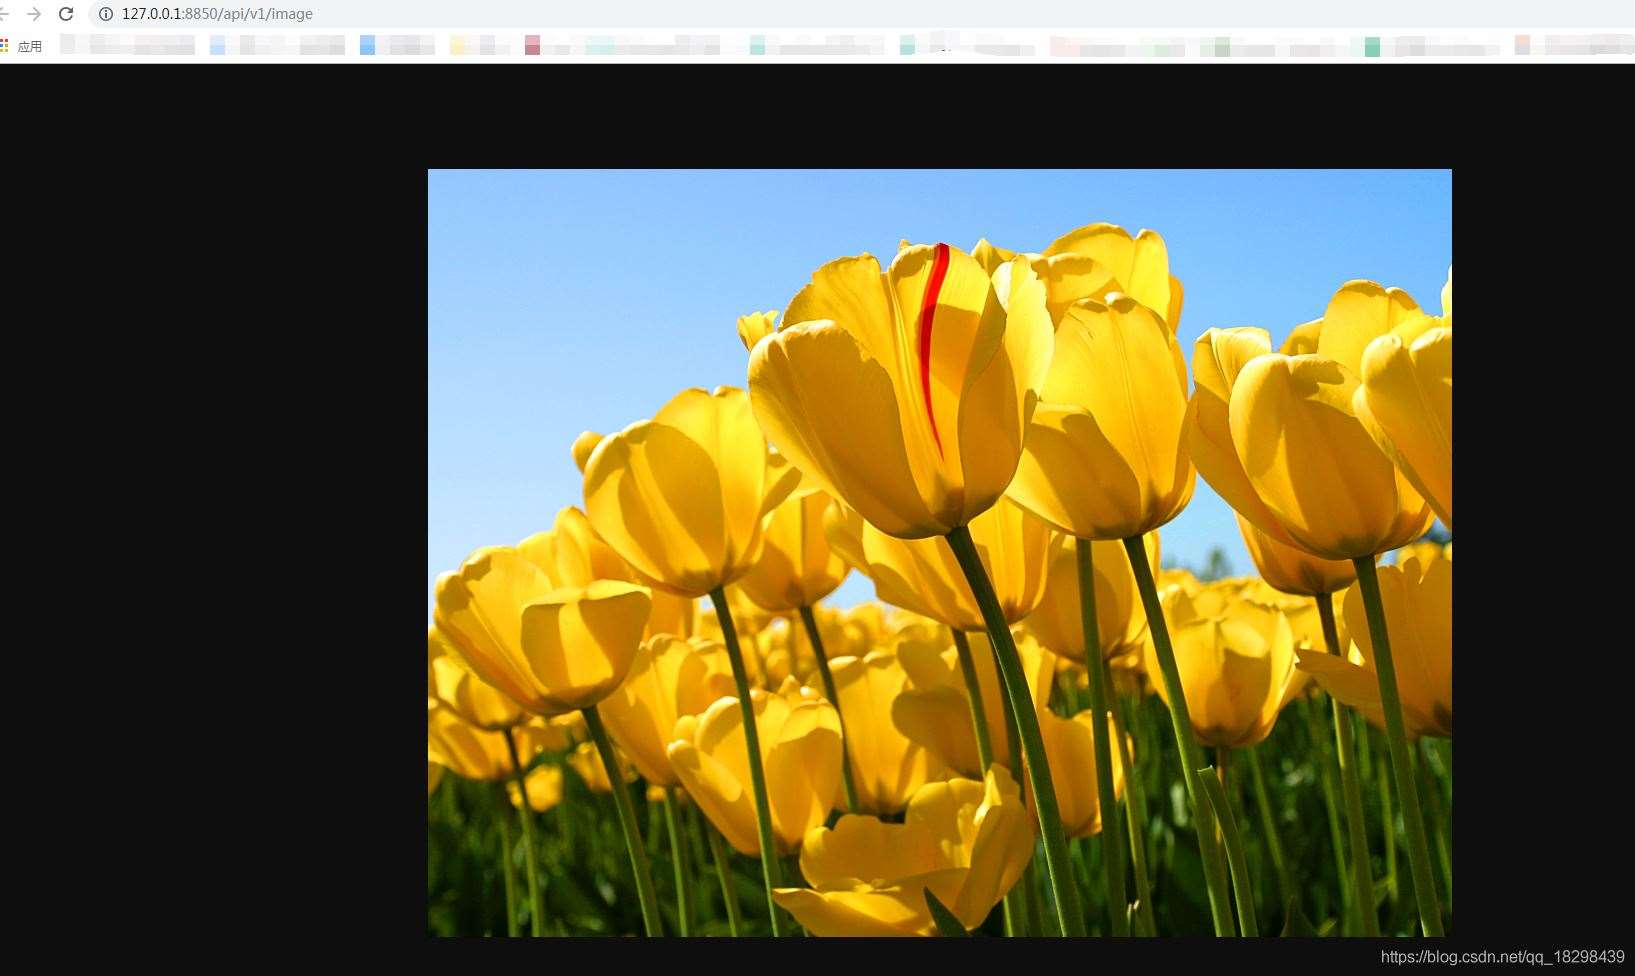 在SpringBoot中使用@ResponseBody实现返回图片功能